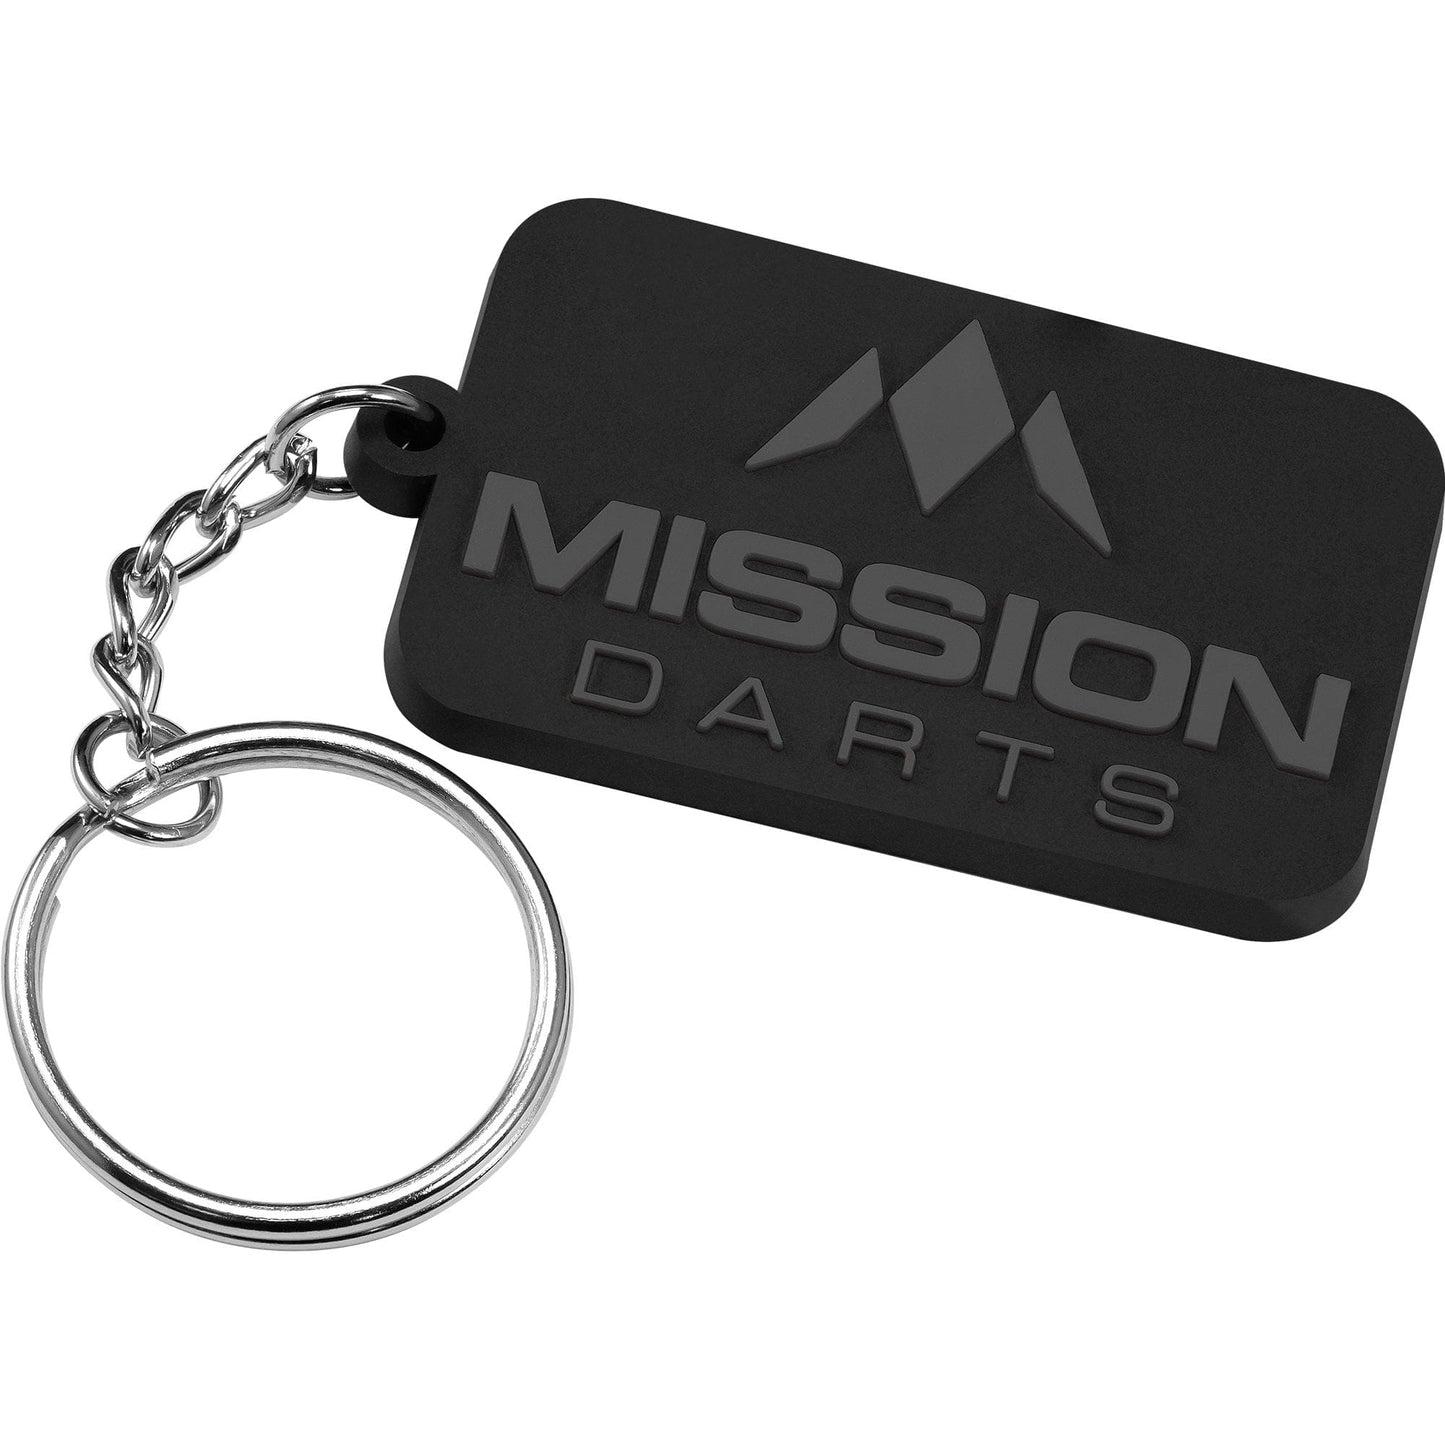 *Mission Logo Keyring - Soft PVC Feel Grey